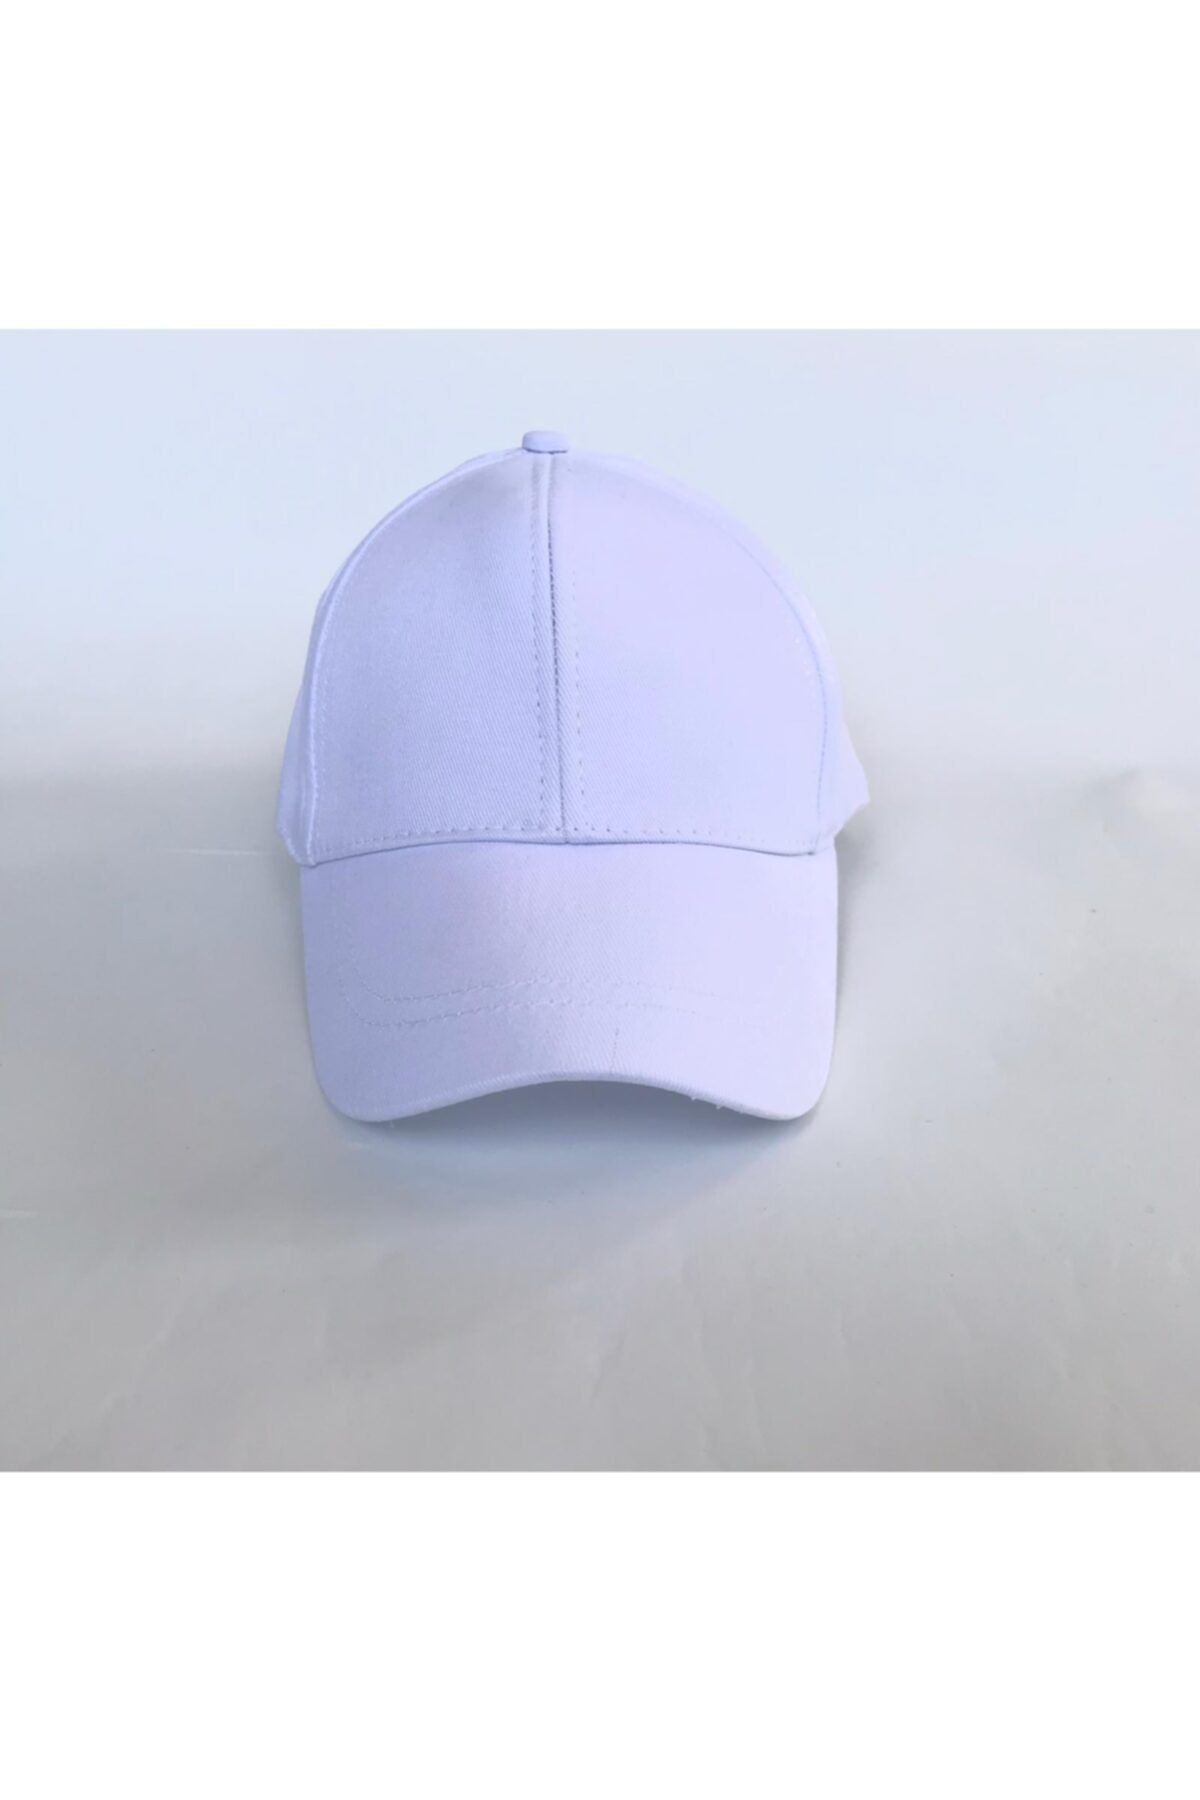 salarticaret Unisex Beyaz Spor Arkası Cırtlı Ayarlanabilir Şapka 55-60 Cm